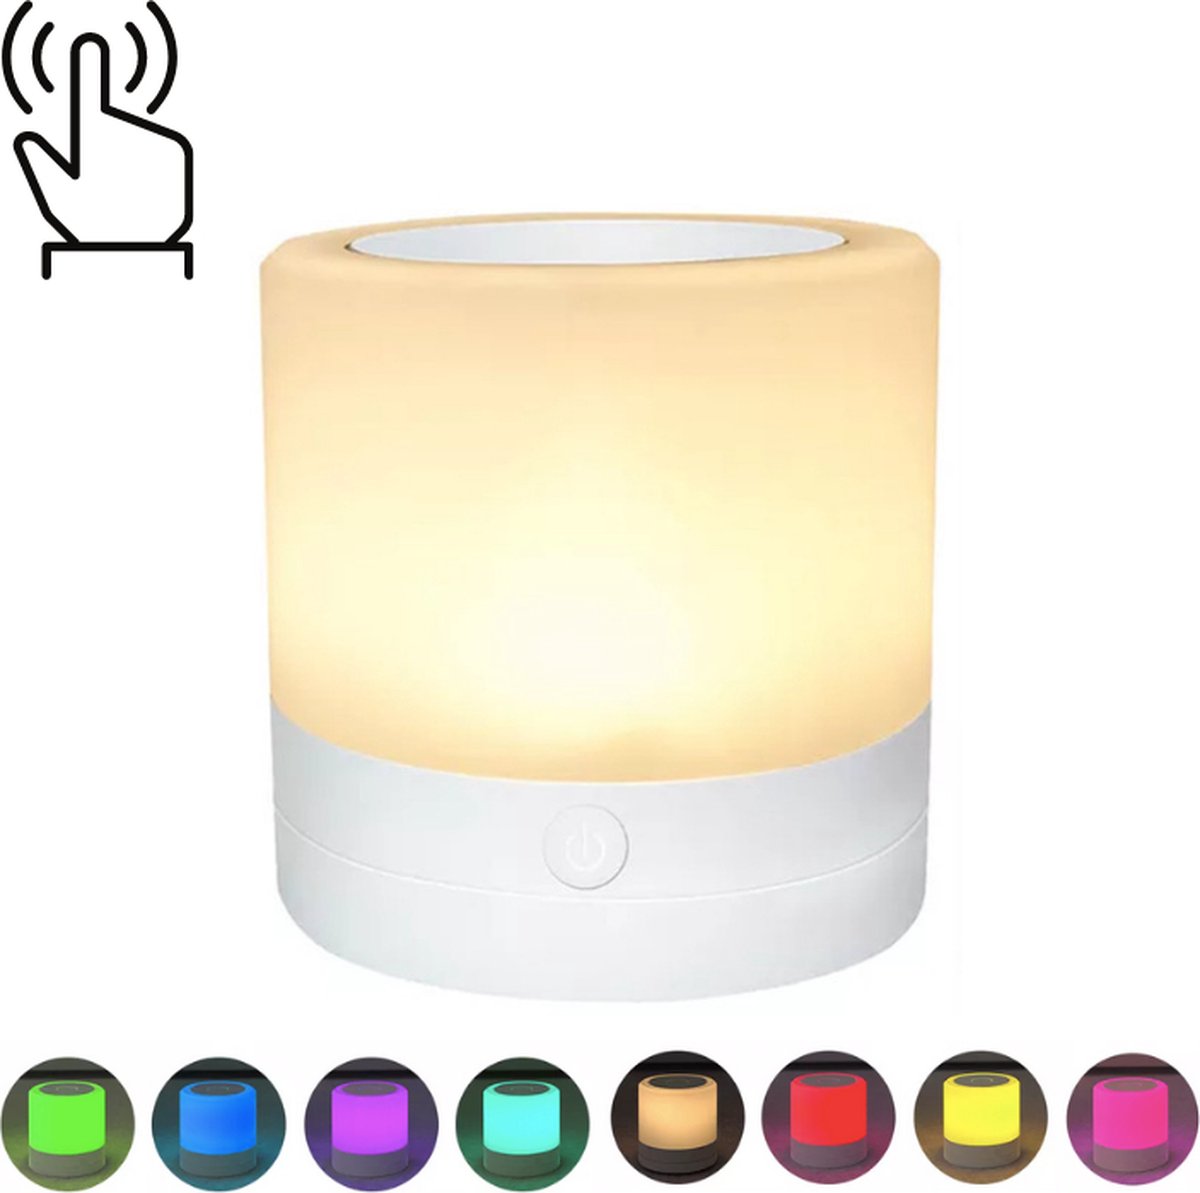 Fleau Nachtlampje Multi Kleur - Led Lamp - Voor Baby/Kinderen/Volwassenen - USB Oplaadbaar - Dimbaar